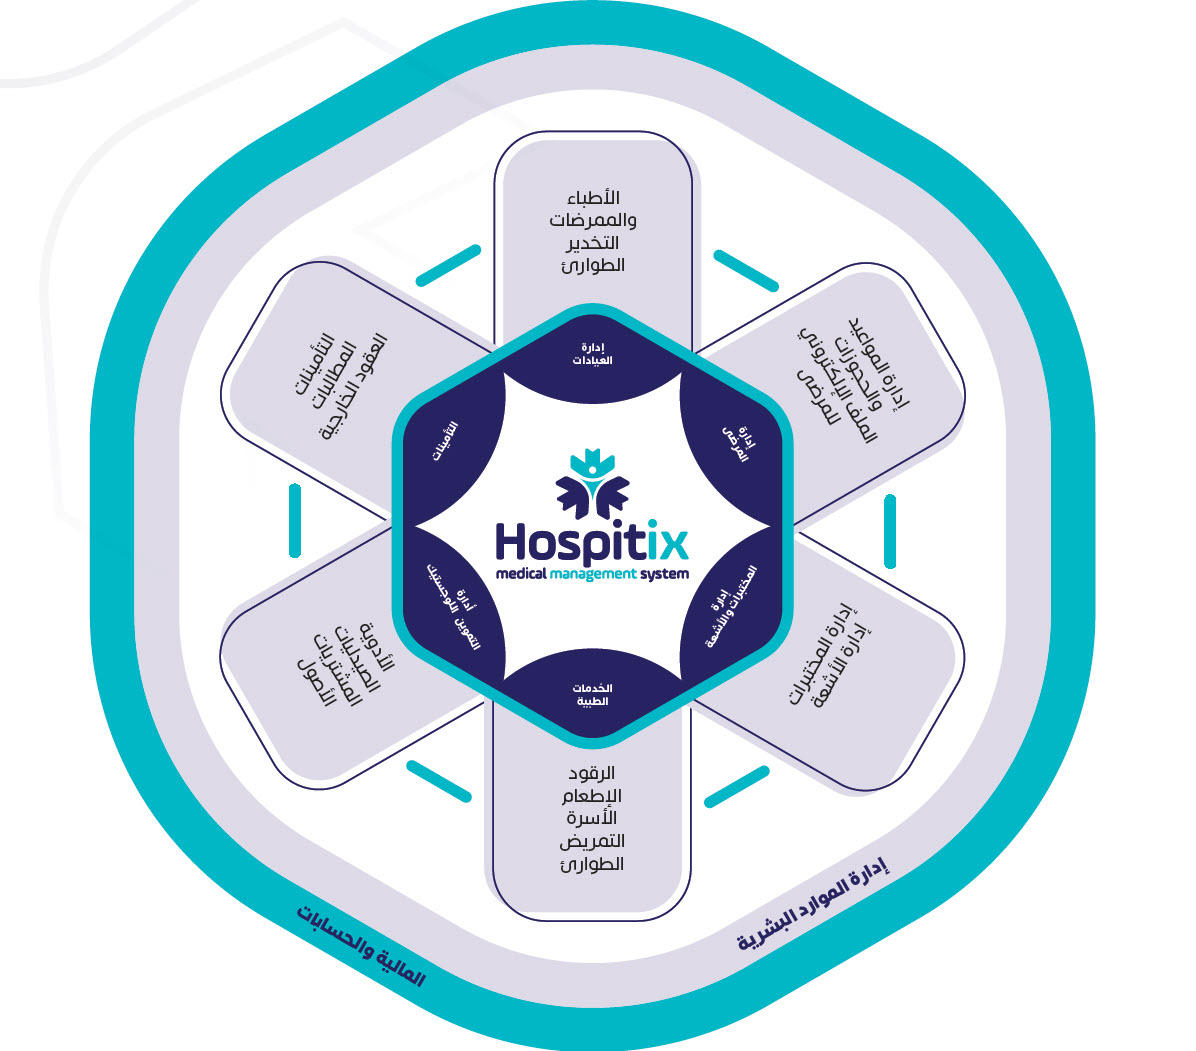 مكونات نظام هوزبيتكس لادارة المستشفيات الجزائر